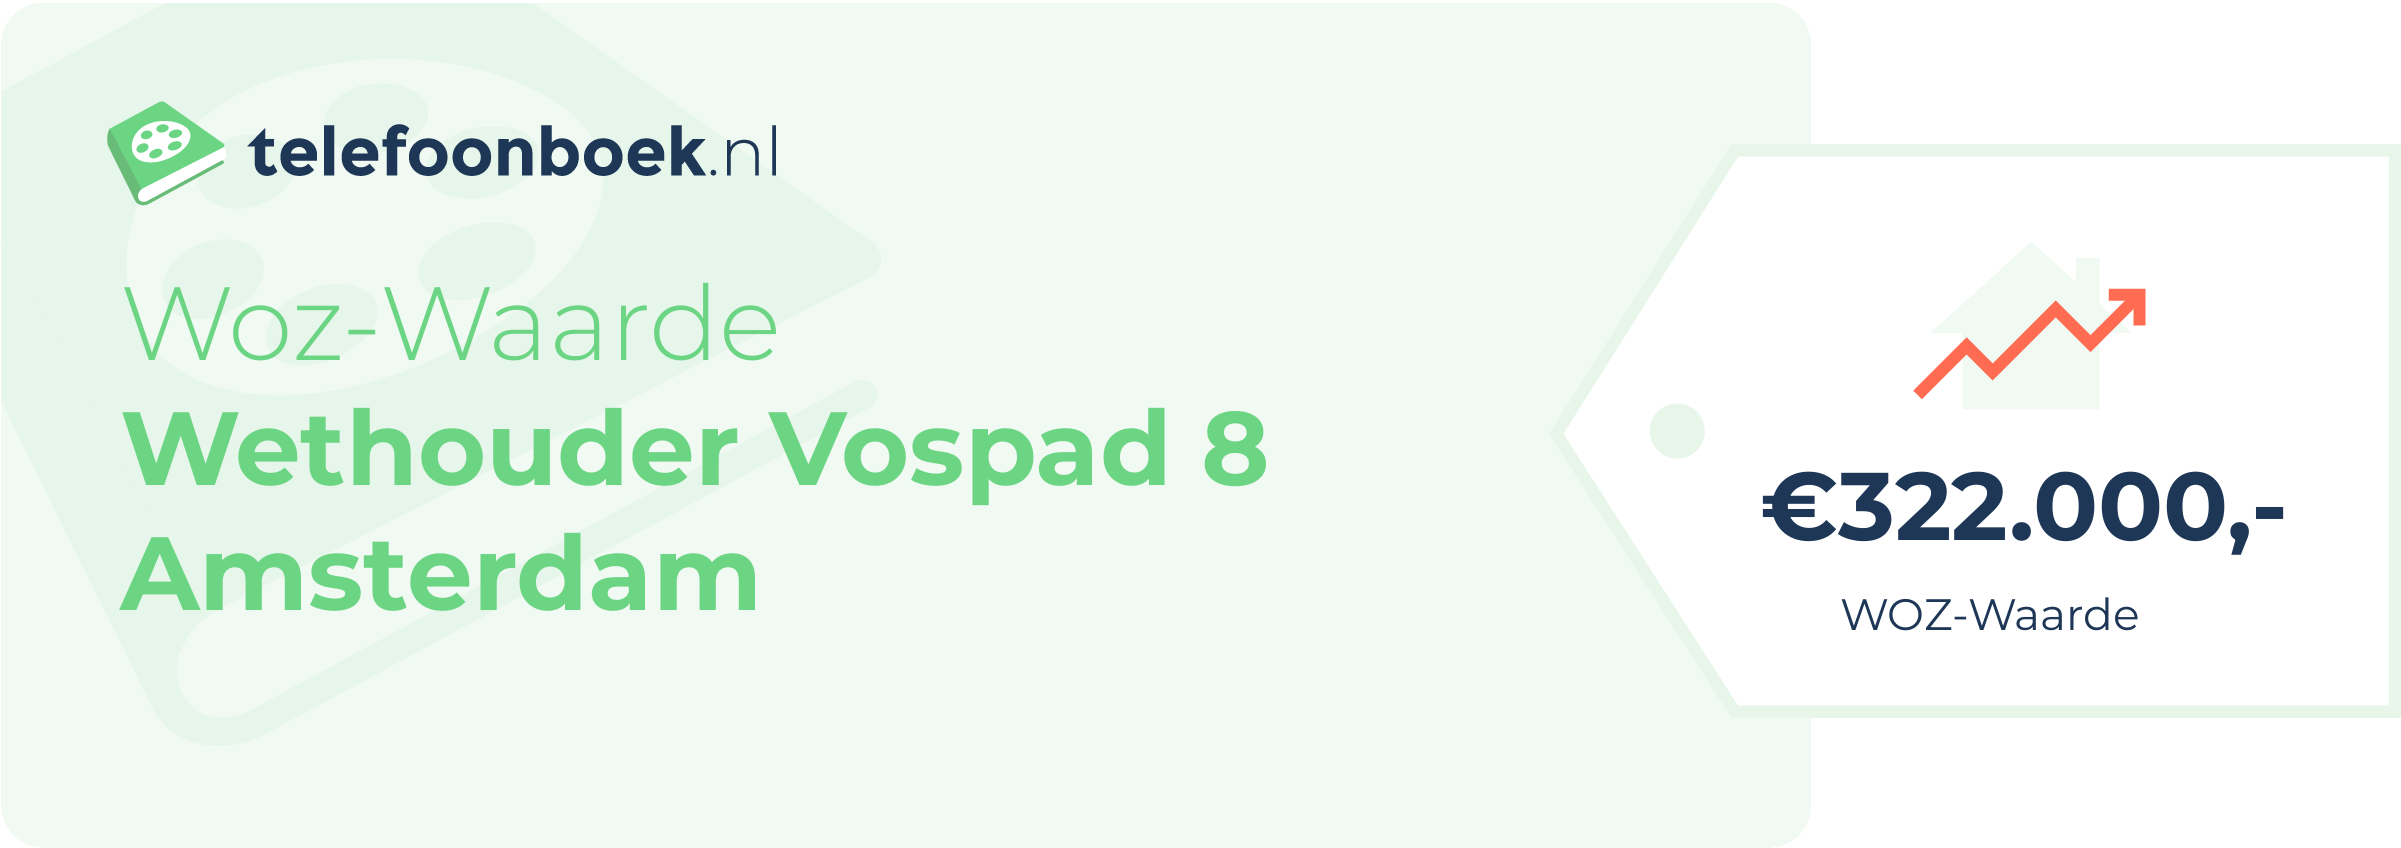 WOZ-waarde Wethouder Vospad 8 Amsterdam